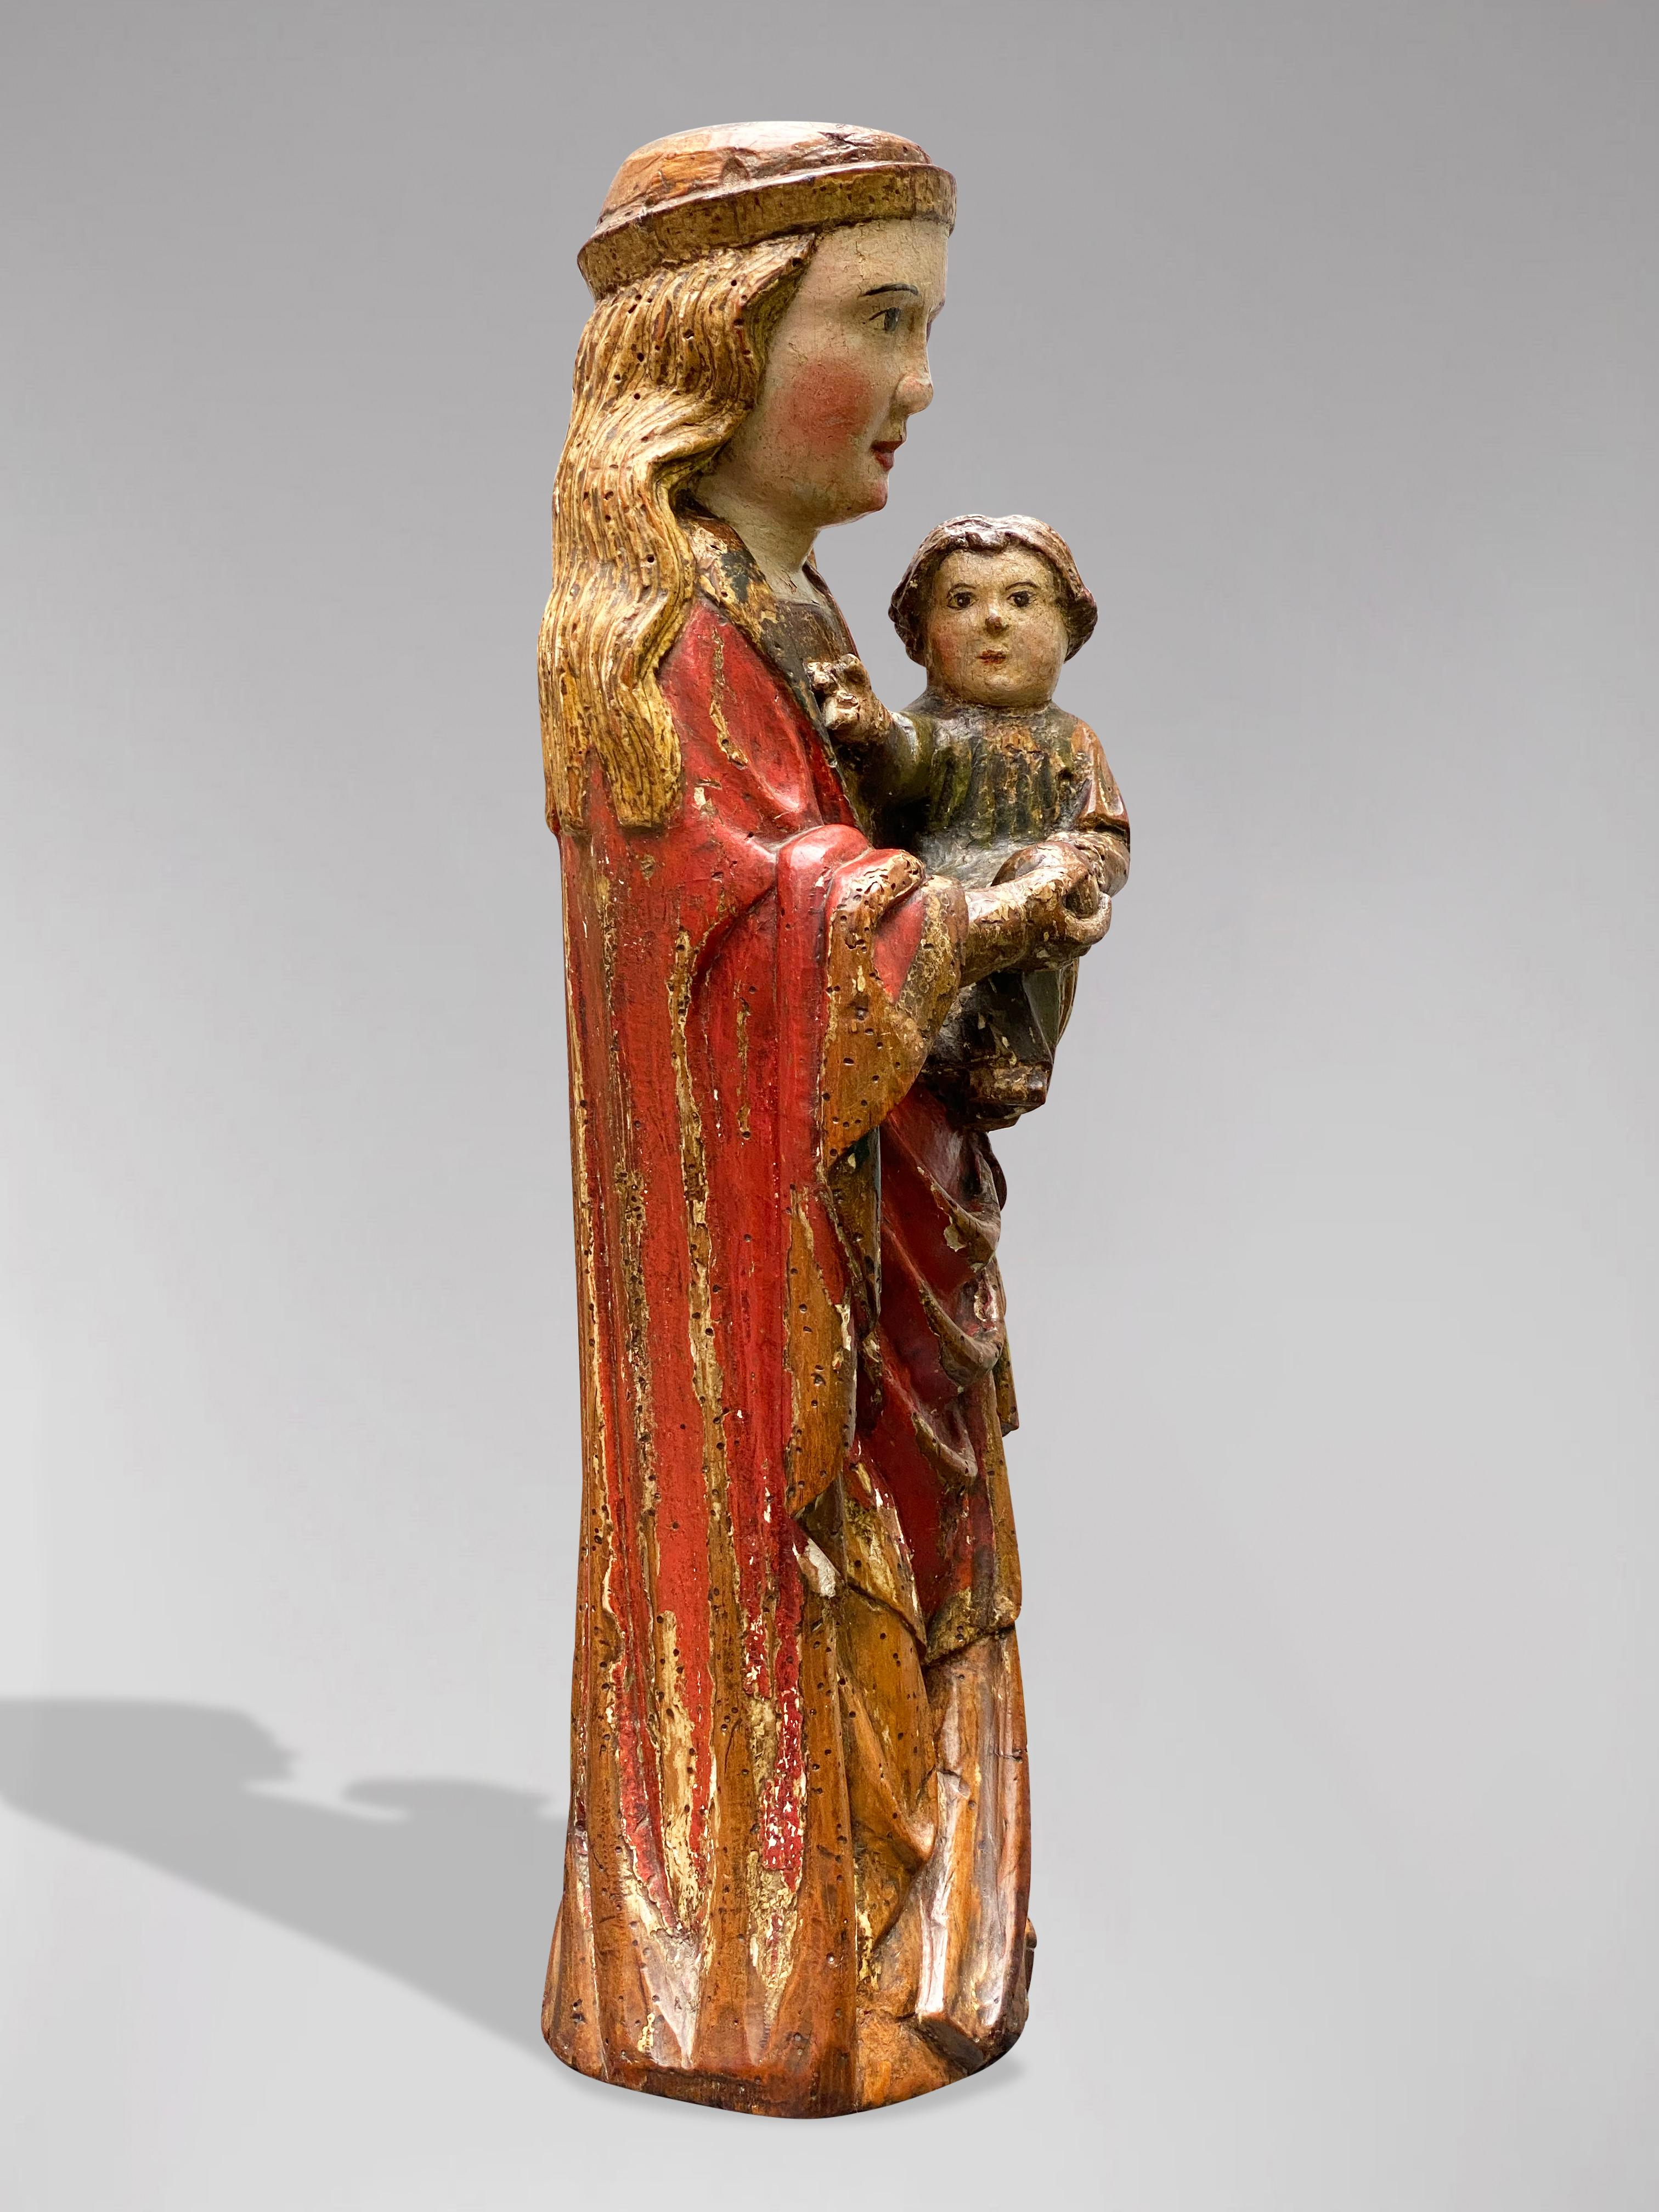 Beschreibung: Eine spanische Statue der Jungfrau Maria mit dem Kind Jezus, CIRCA 1600, polychromiertes Holz

Statue : Madonna mit Kind
Objekttyp: Statuette
Künstler, Bildhauer / Schöpfer: Unbekannt
Herkunftsort: Spanien
Zeitraum: CIRCA